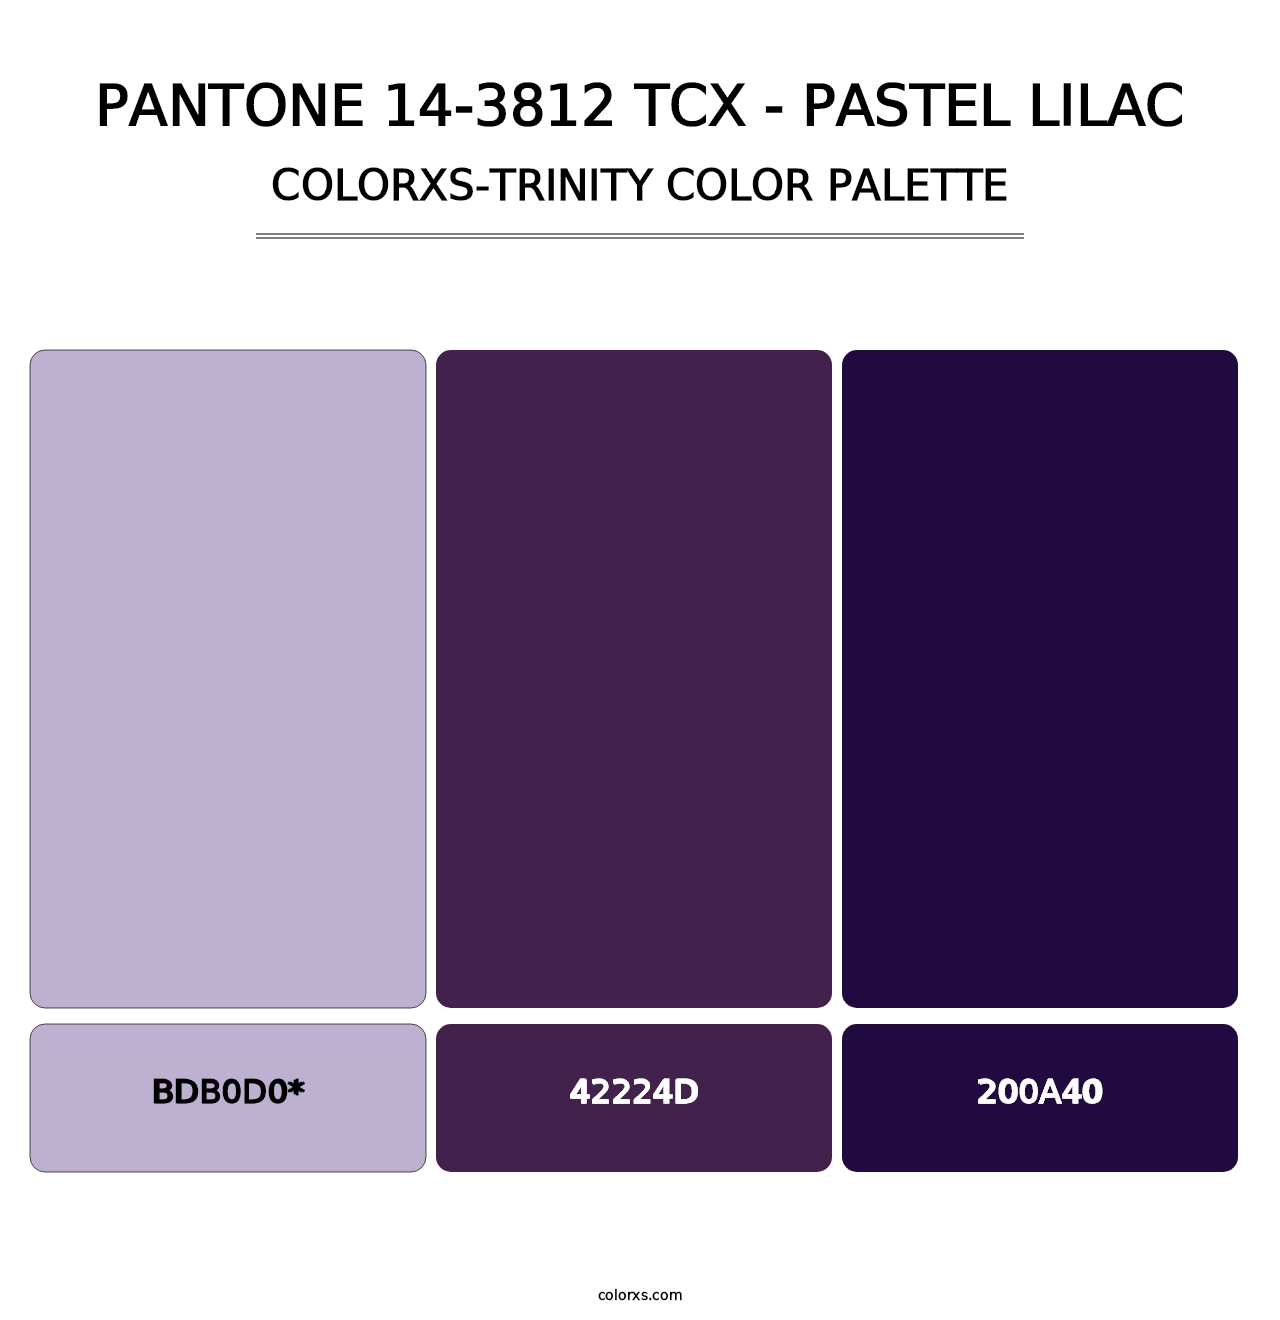 PANTONE 14-3812 TCX - Pastel Lilac - Colorxs Trinity Palette